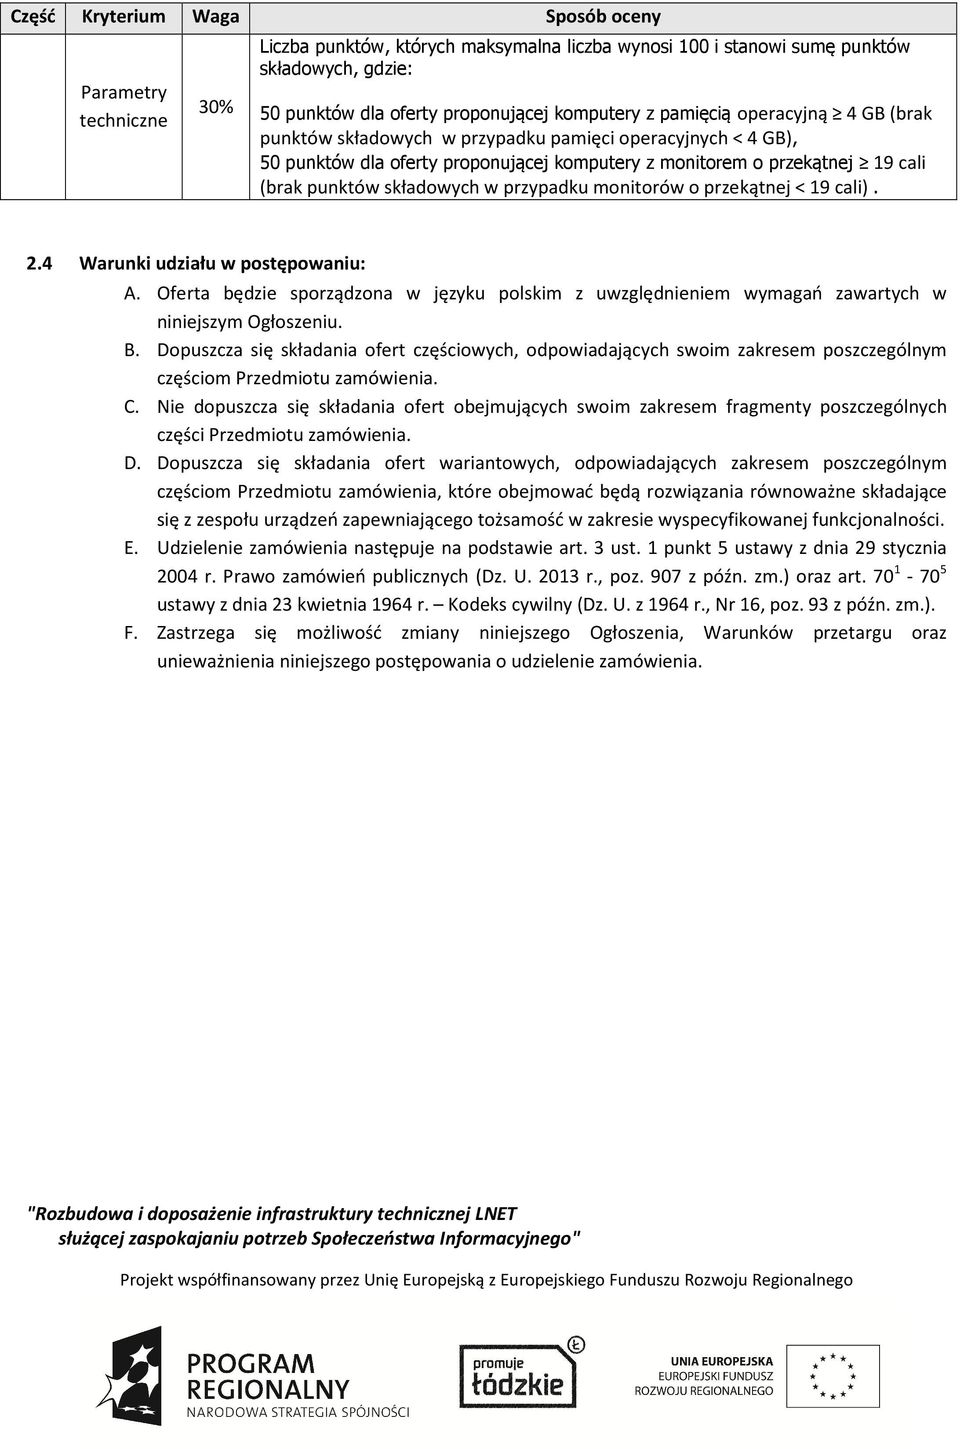 przypadku monitorów o przekątnej < 19 cali). 2.4 Warunki udziału w postępowaniu: A. Oferta będzie sporządzona w języku polskim z uwzględnieniem wymagań zawartych w niniejszym Ogłoszeniu. B.